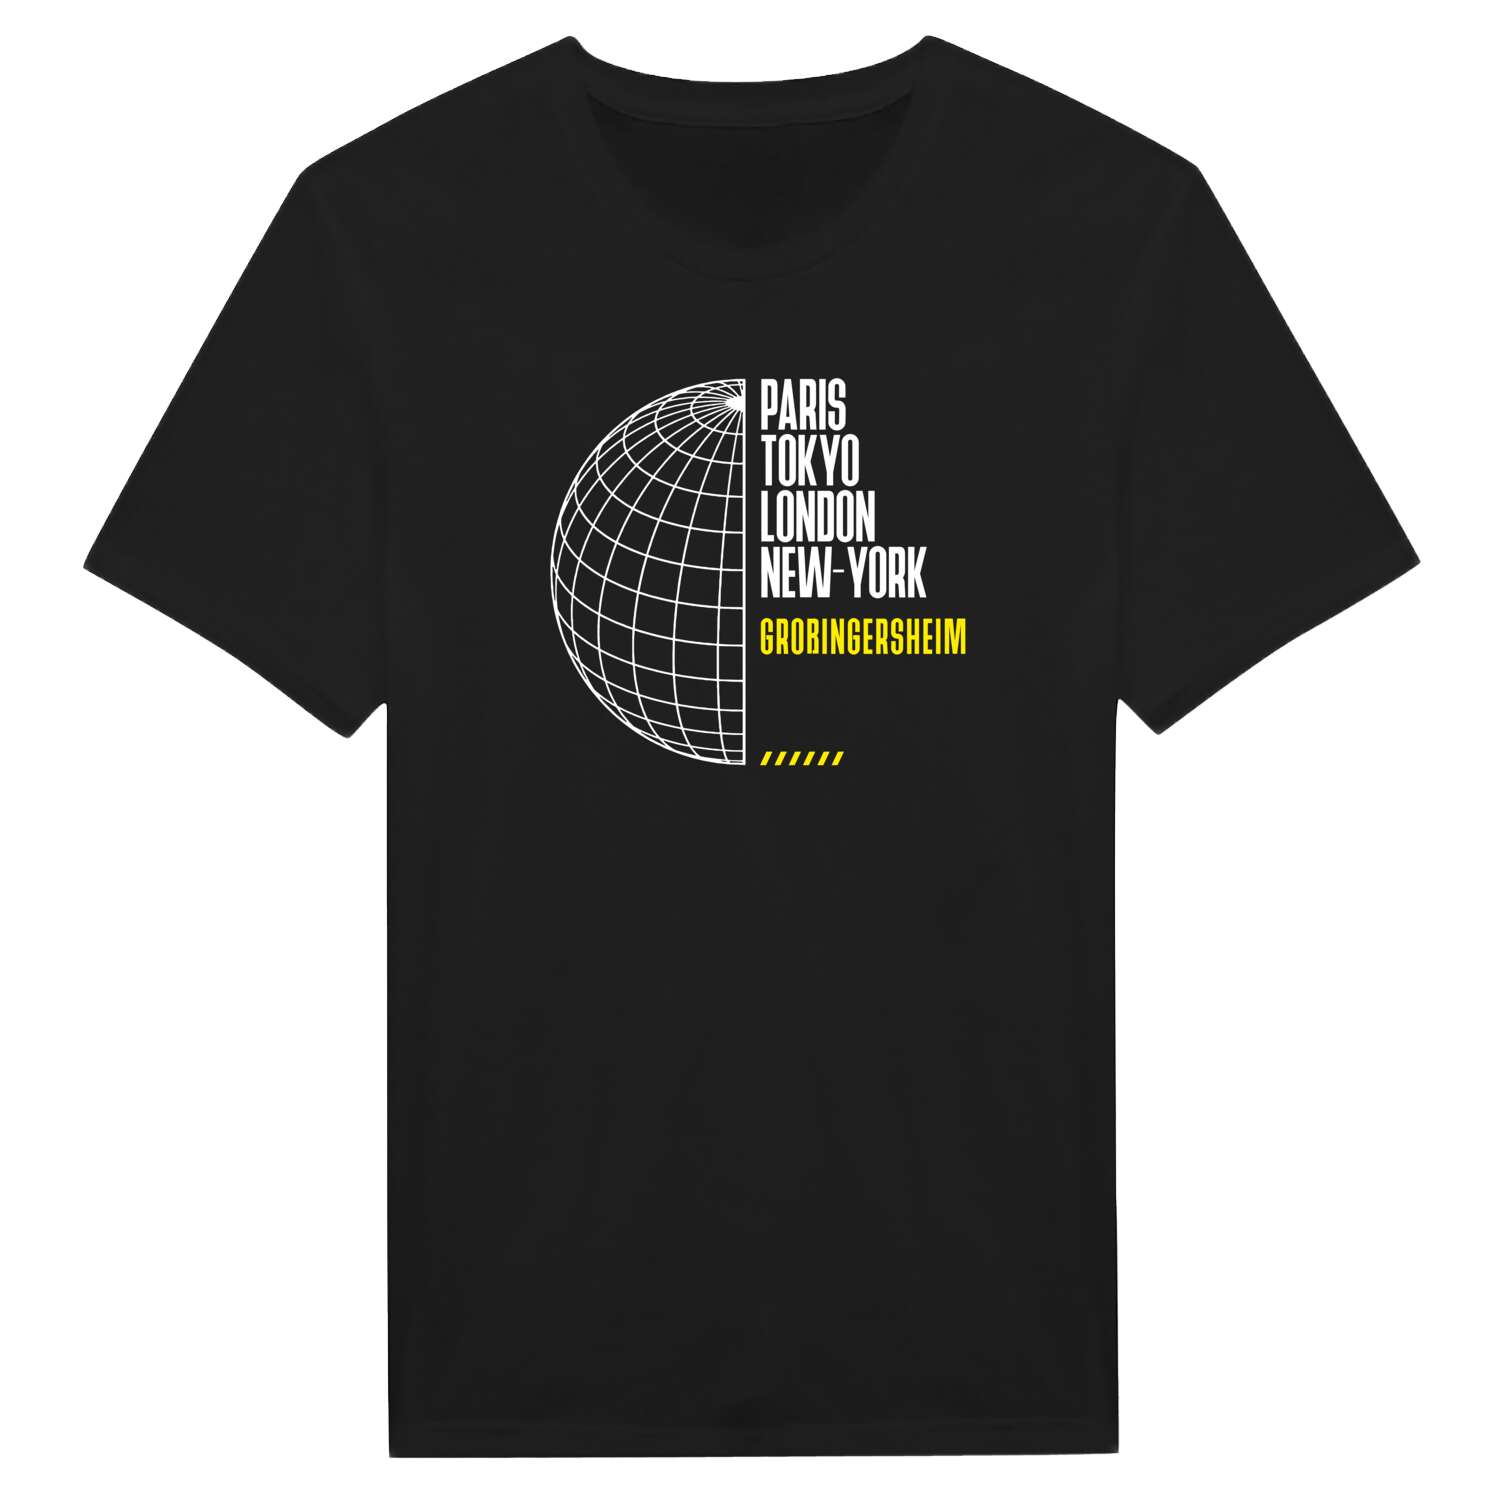 Großingersheim T-Shirt »Paris Tokyo London«